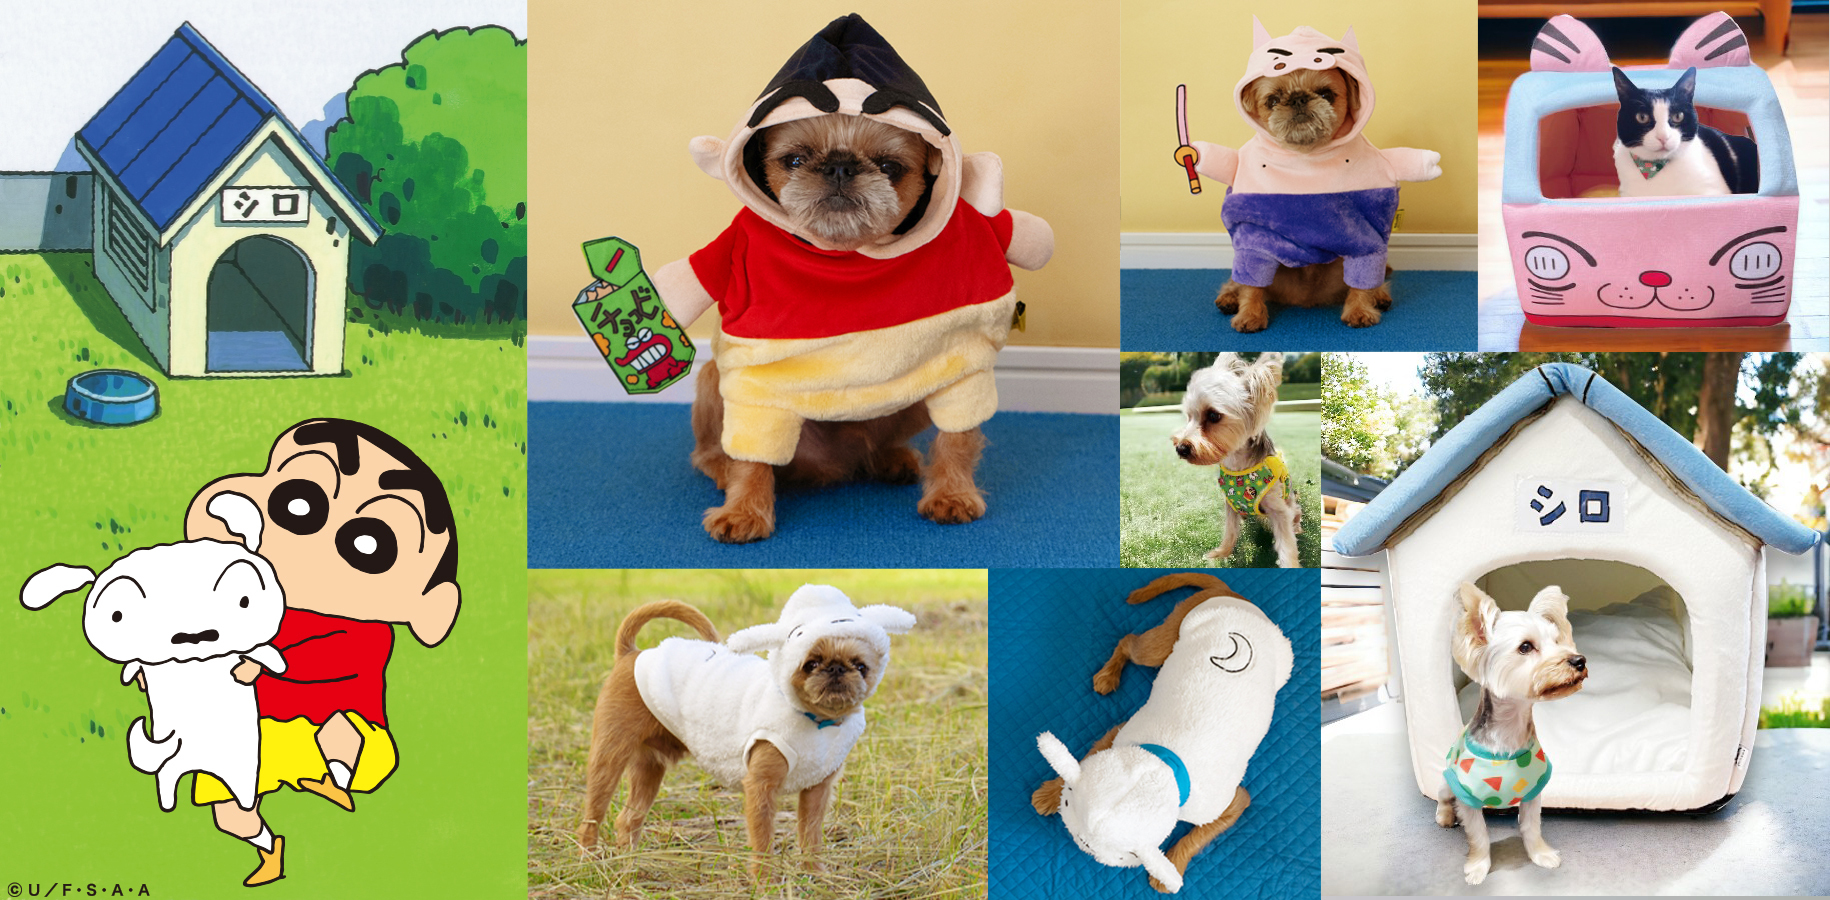 日本最大級のペットイベント「第13回インターペット」に出展　
愛犬とリンクコーデできる人気アニメキャラTシャツなど展示